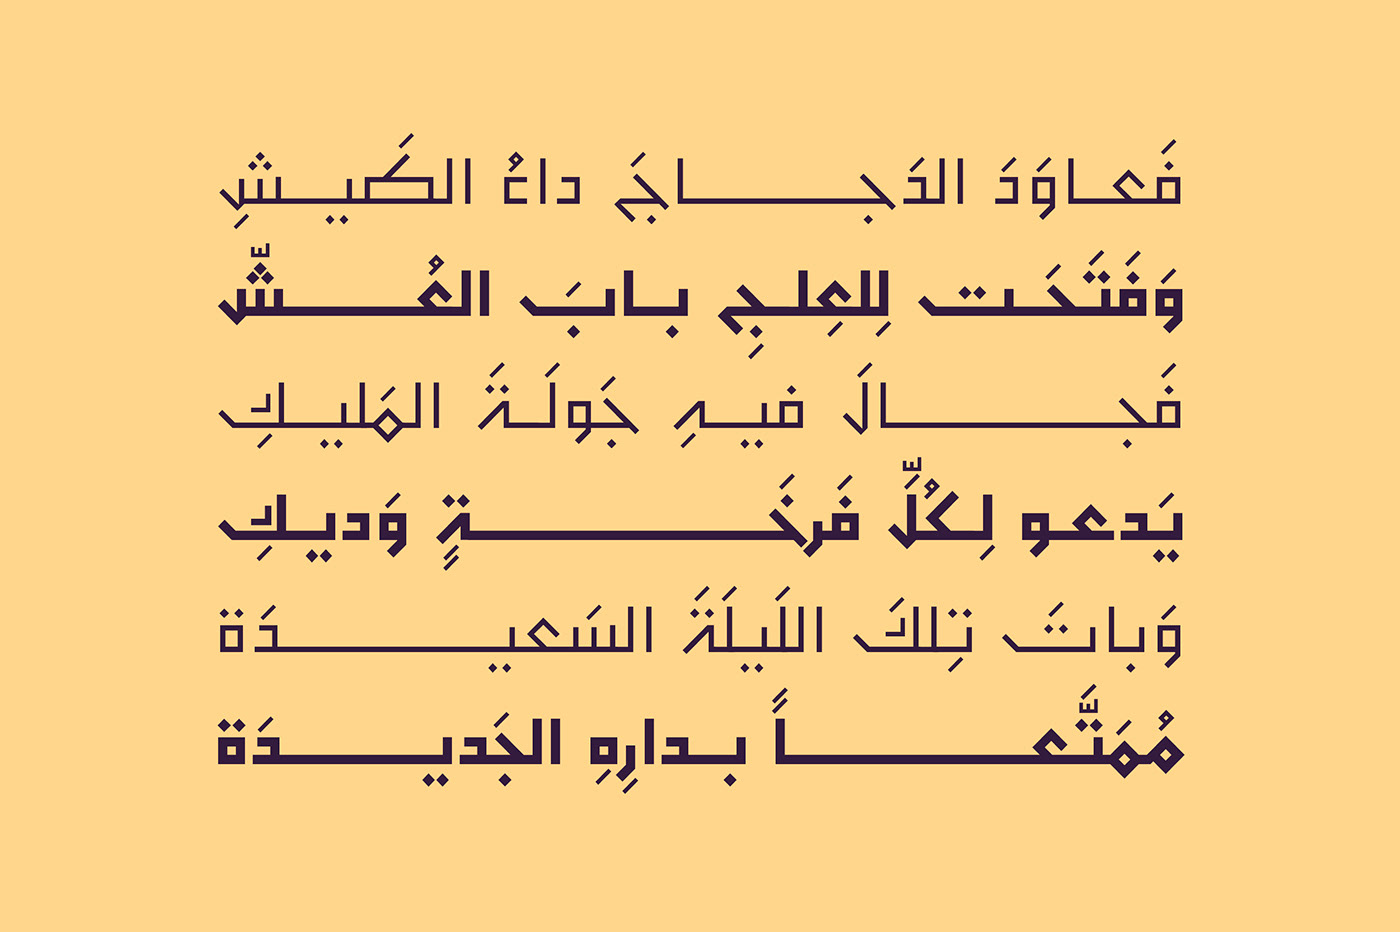 خط عربي خطوط فونت   تايبوجرافي arabic font arabic typography islamic art font Arabic Type Design تايبو